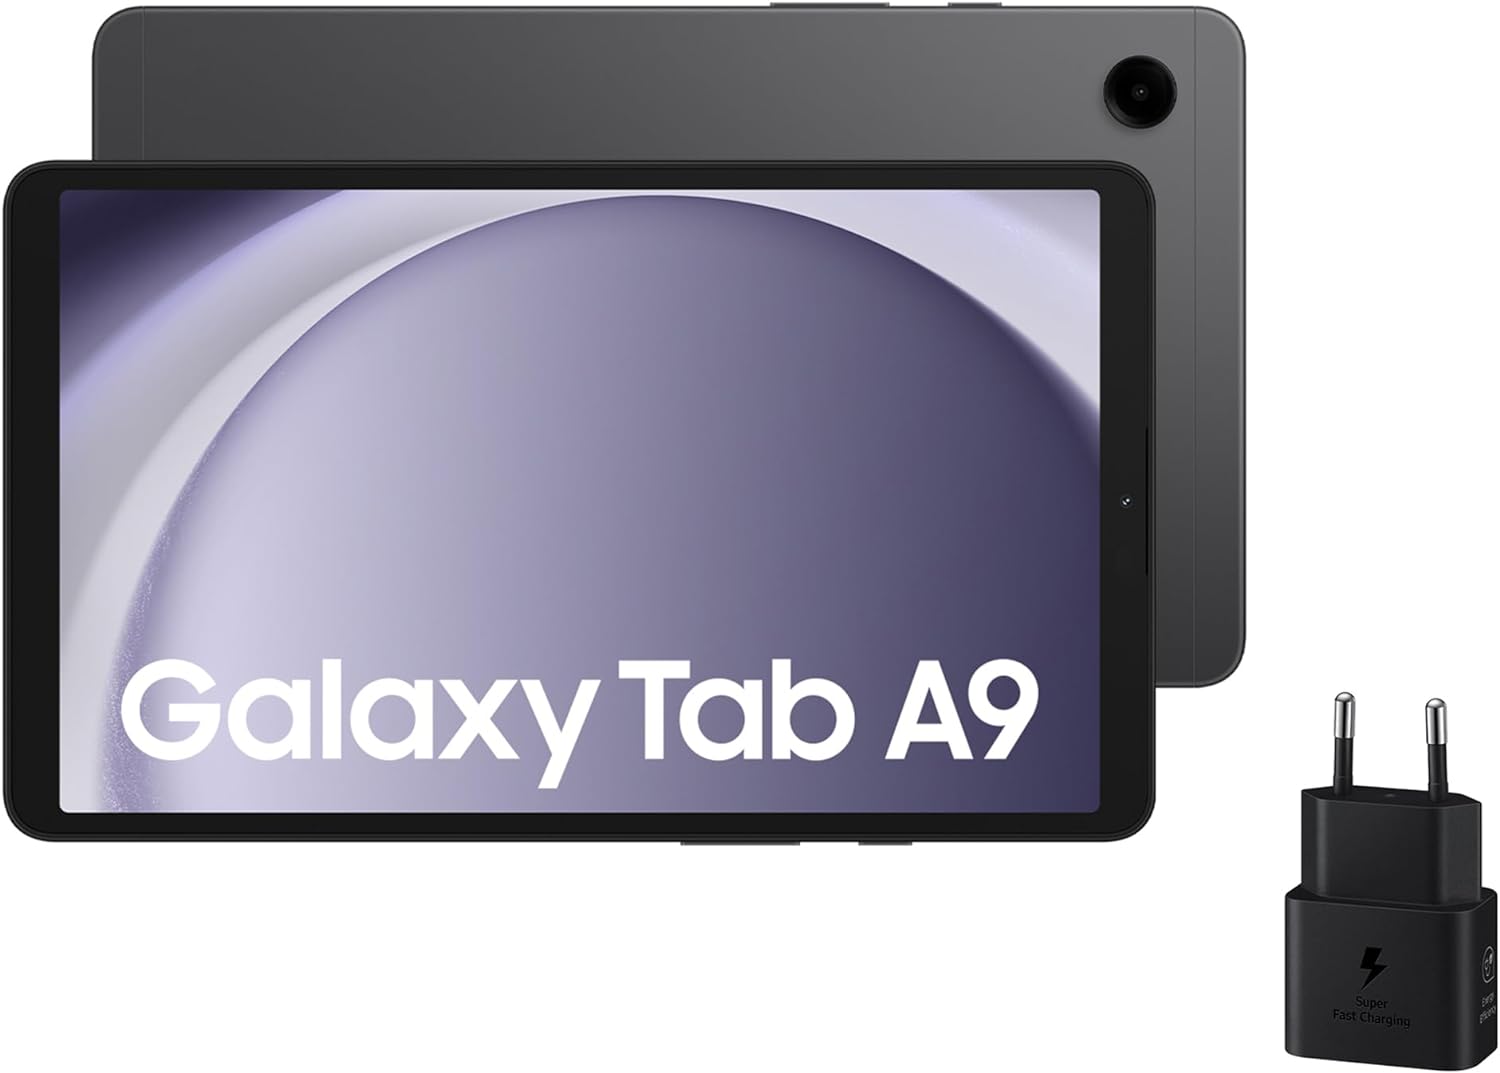 Samsung Galaxy Tab A9 vs Samsung Galaxy Tab A9 Plus